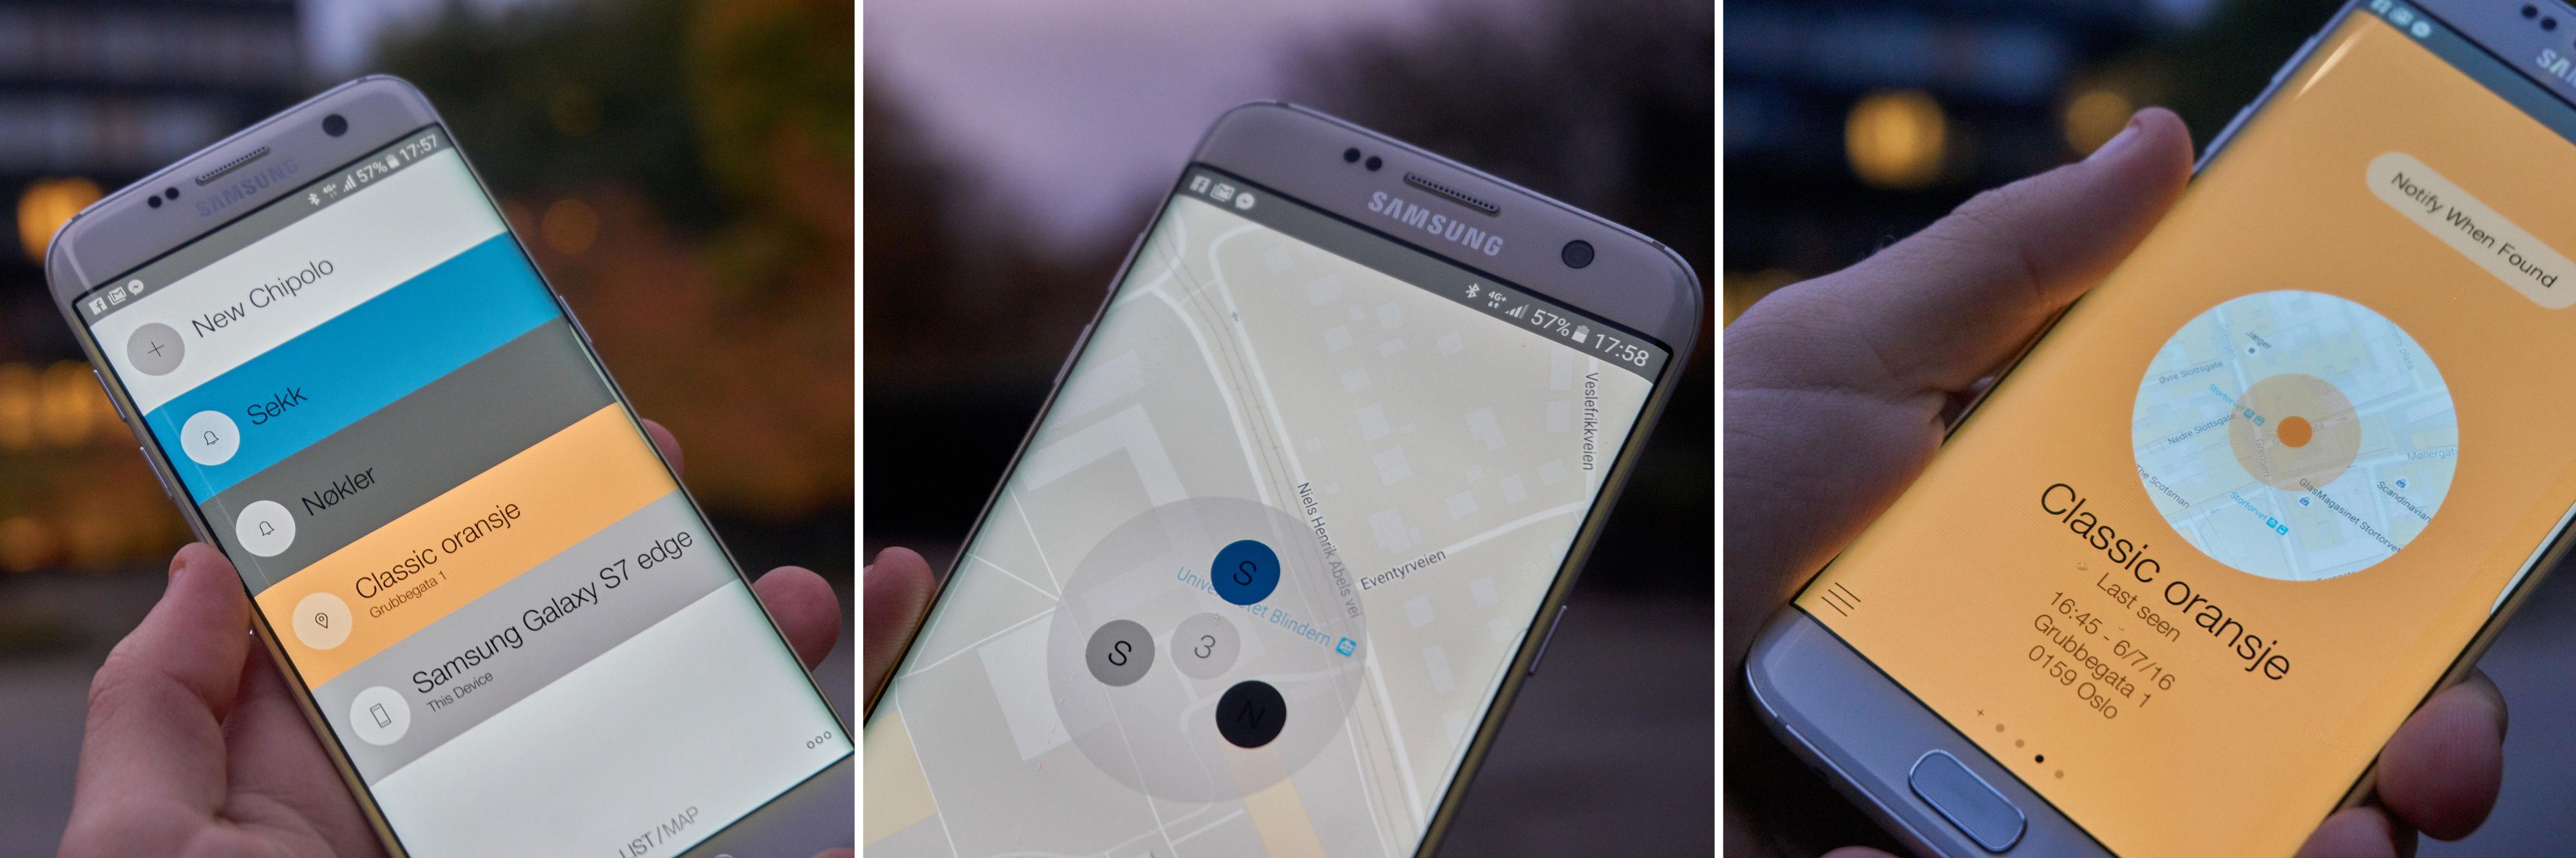 VENSTRE: Oversikten er ryddig og enkel. MIDTEN: Et kart viser deg plasseringen til enhetene dine – inkludert mobilen. HØYRE: Brikker uten kontakt viser en slik skjerm.